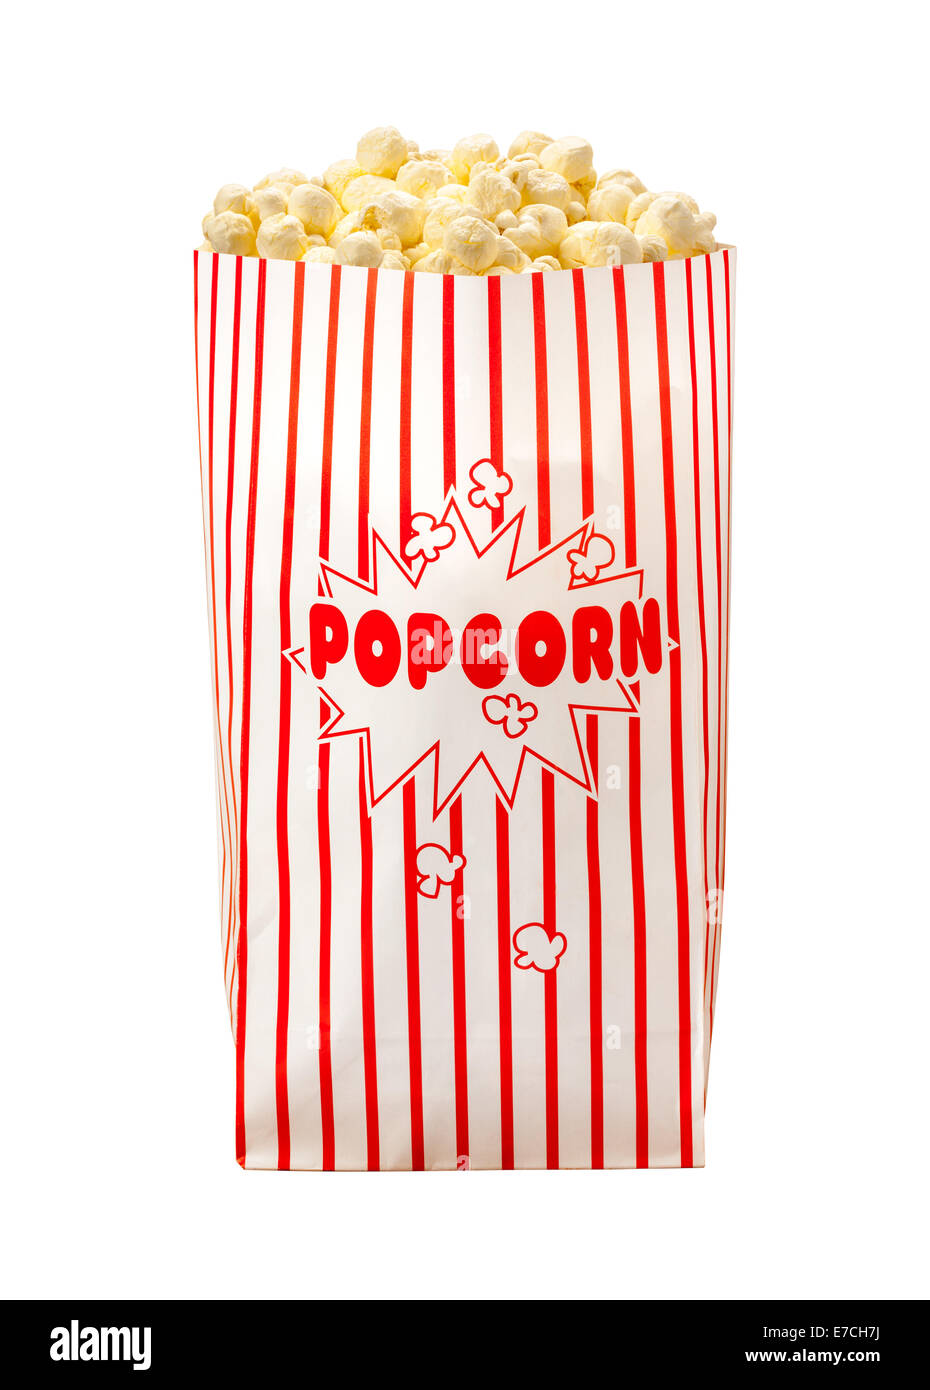 Popcorn bag immagini e fotografie stock ad alta risoluzione - Alamy